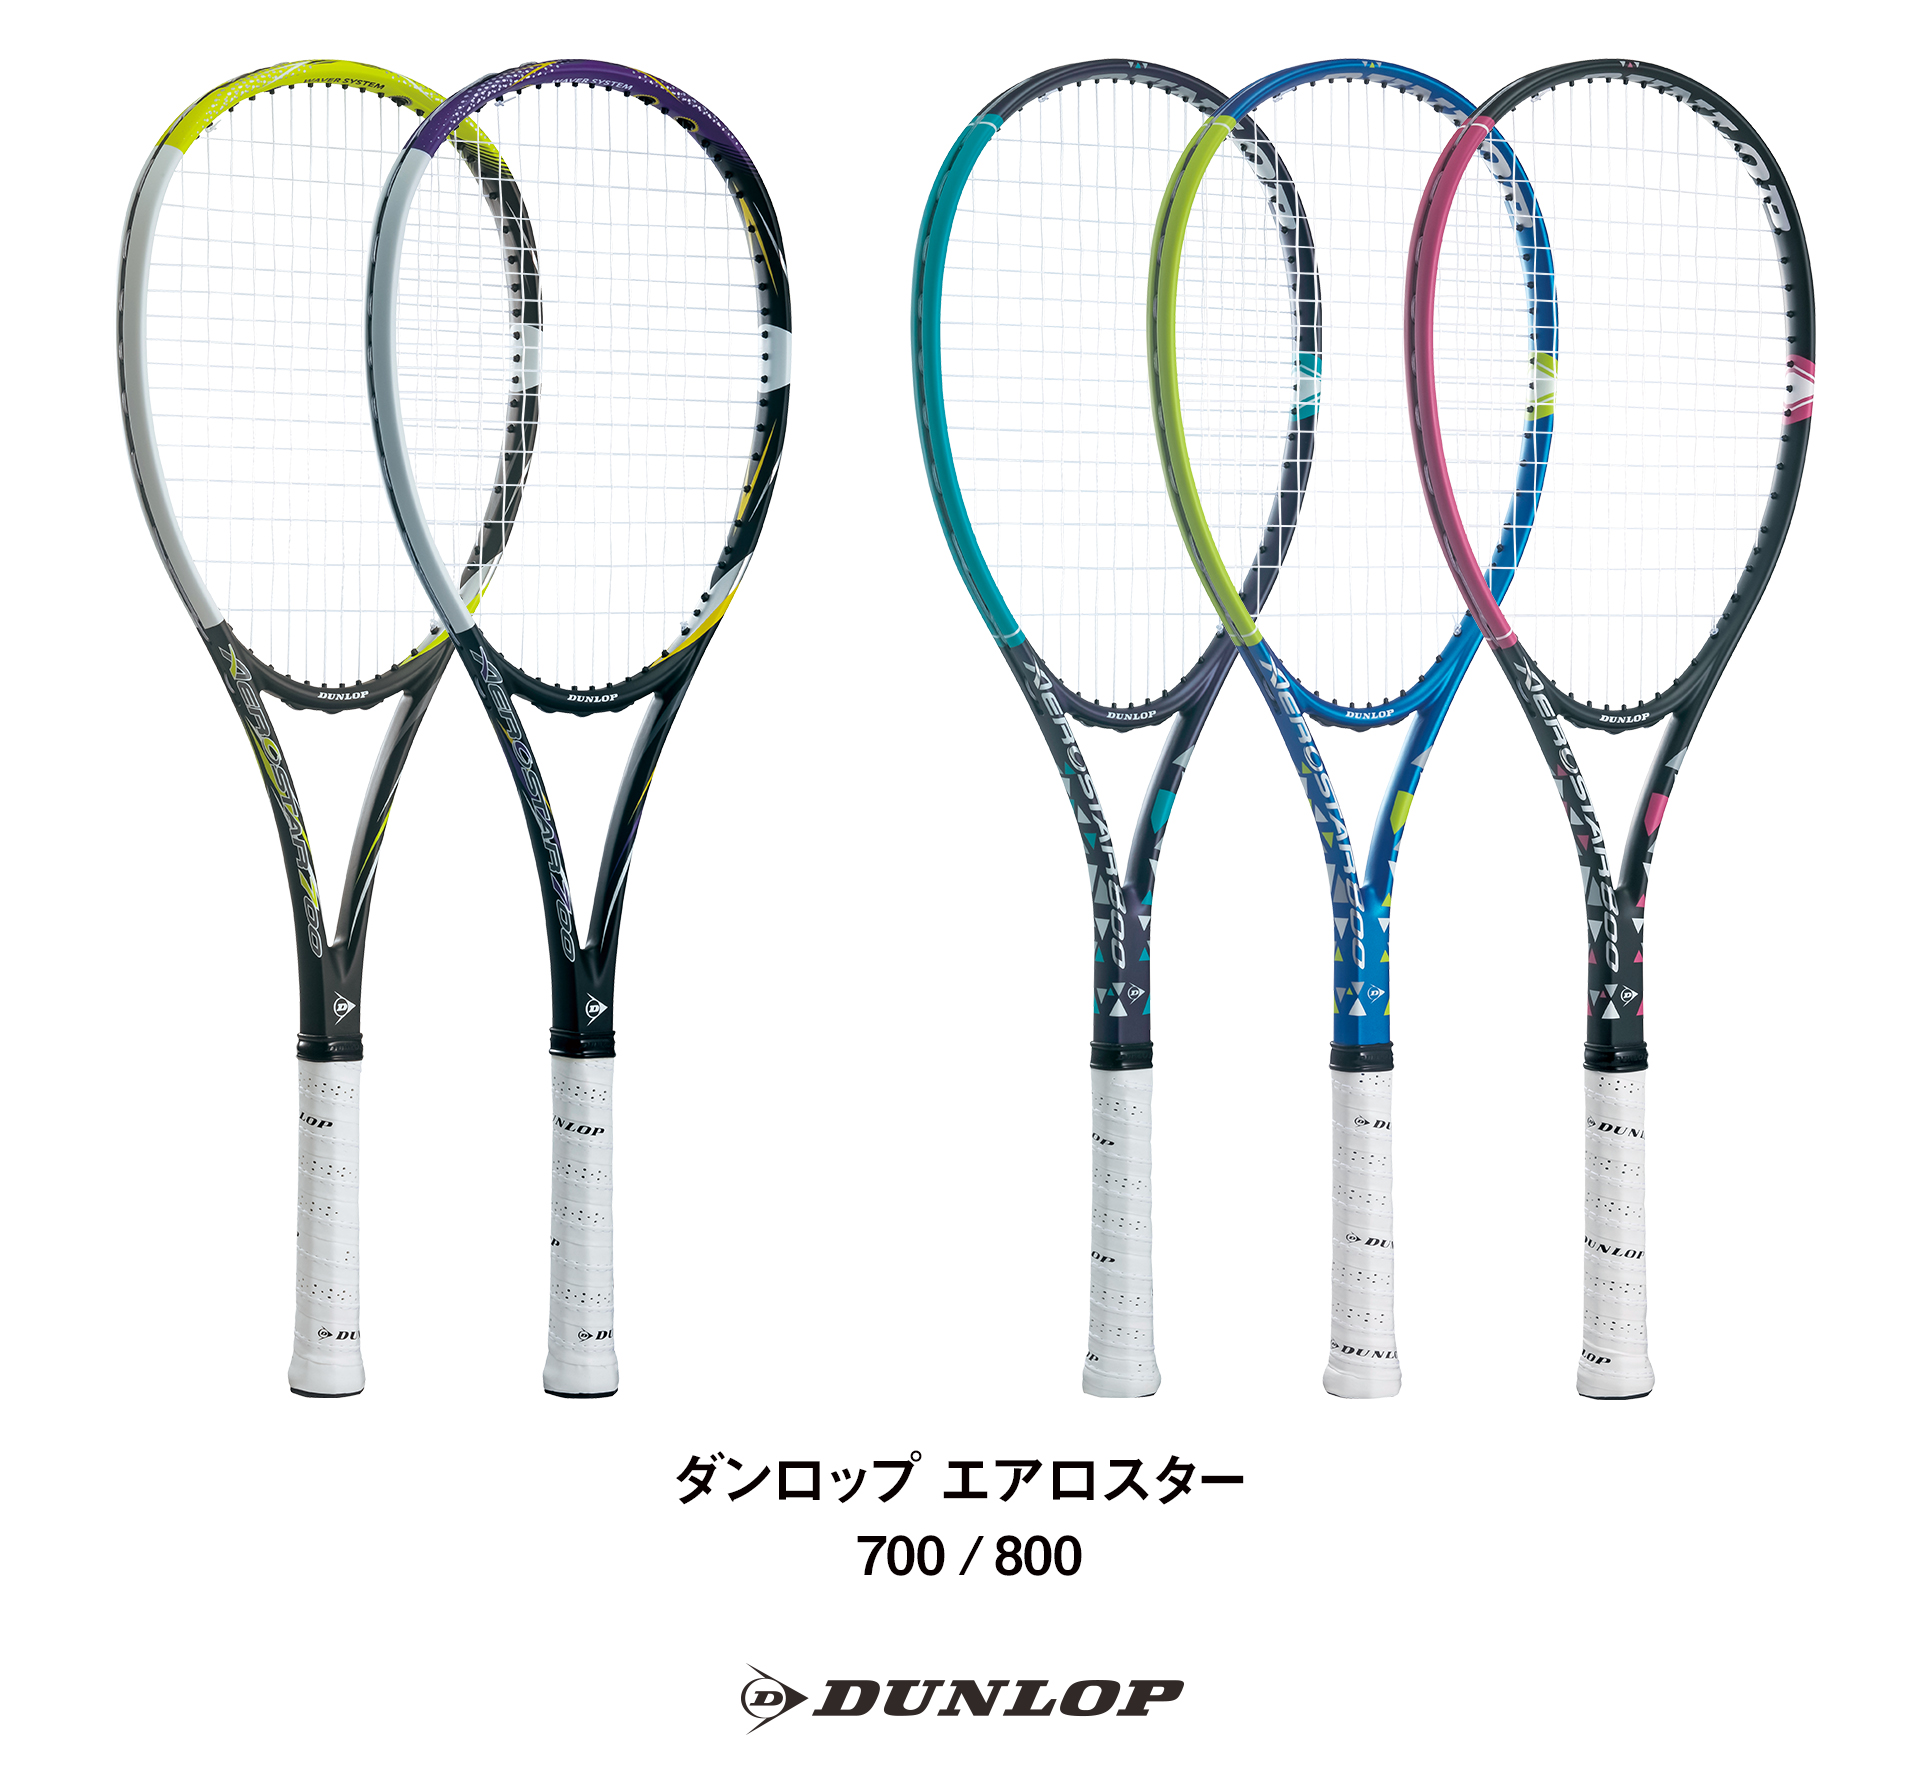 ソフトテニスラケット ダンロップ「エアロスター」シリーズ2機種を新